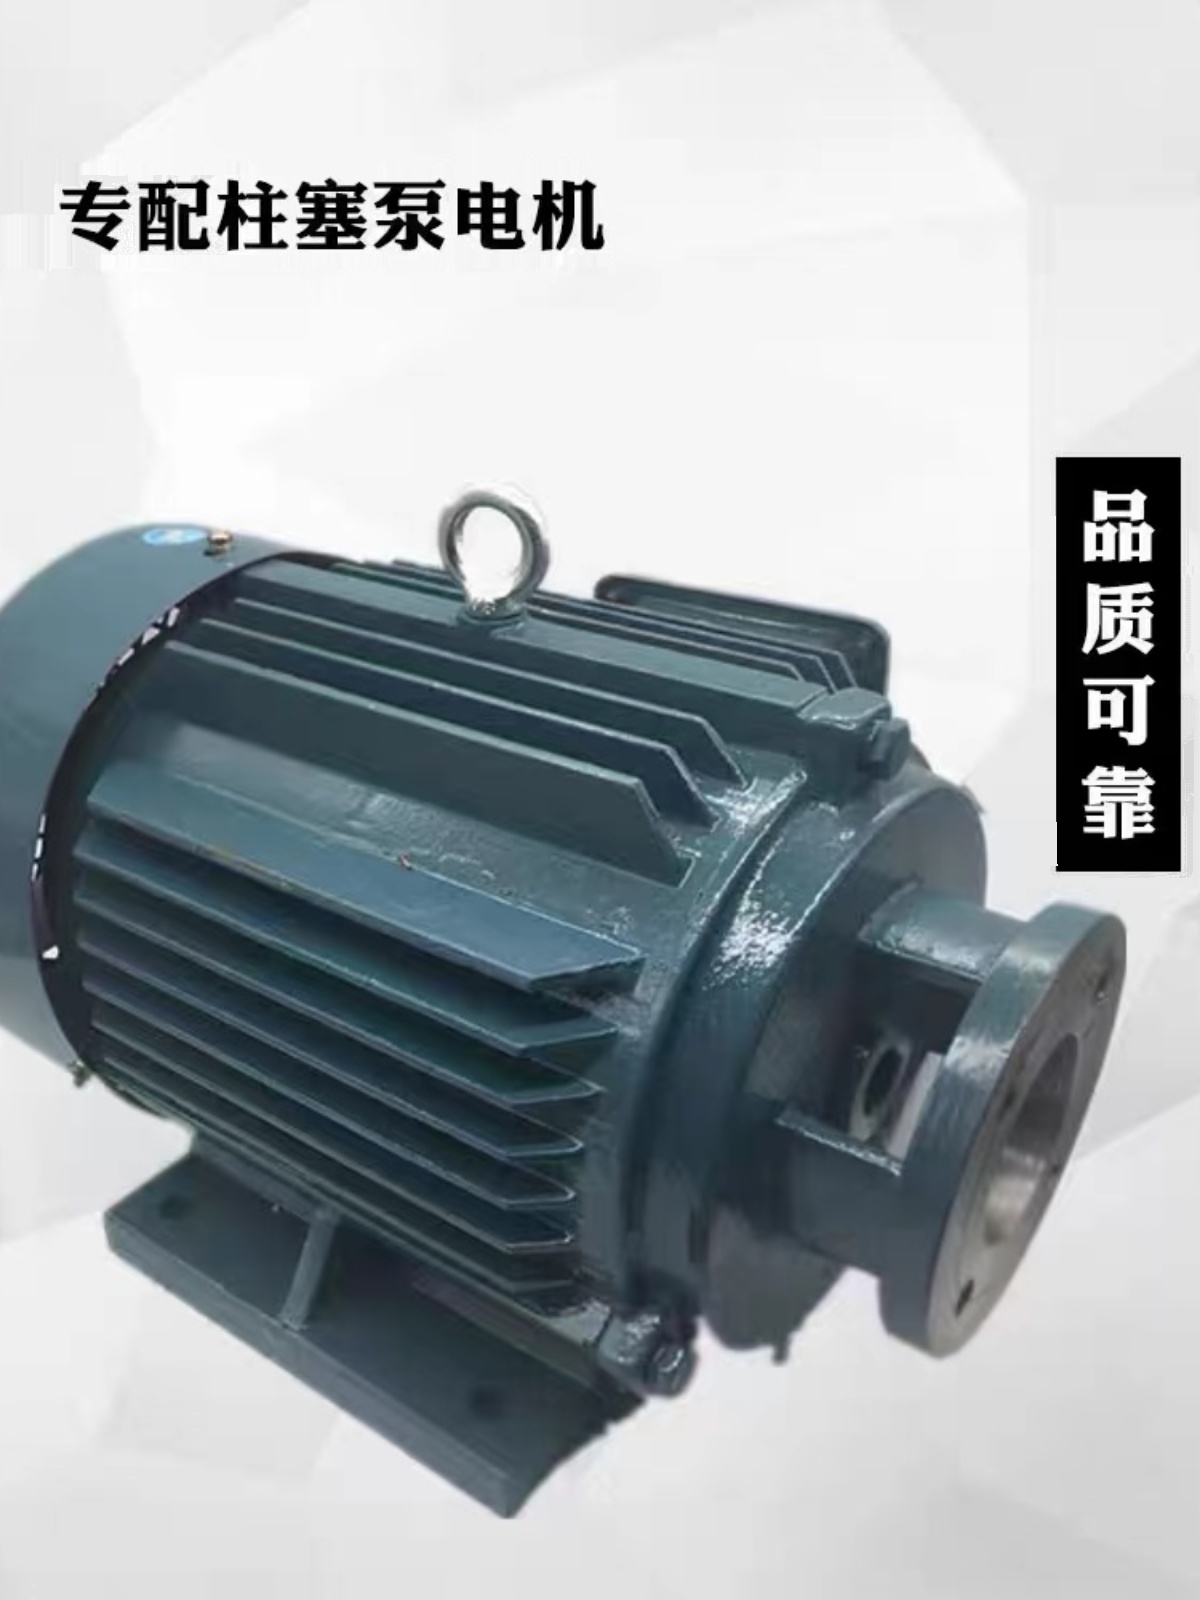 厂上海恒高液压设备102563100160YBH141B轴向柱塞泵自动变量泵销